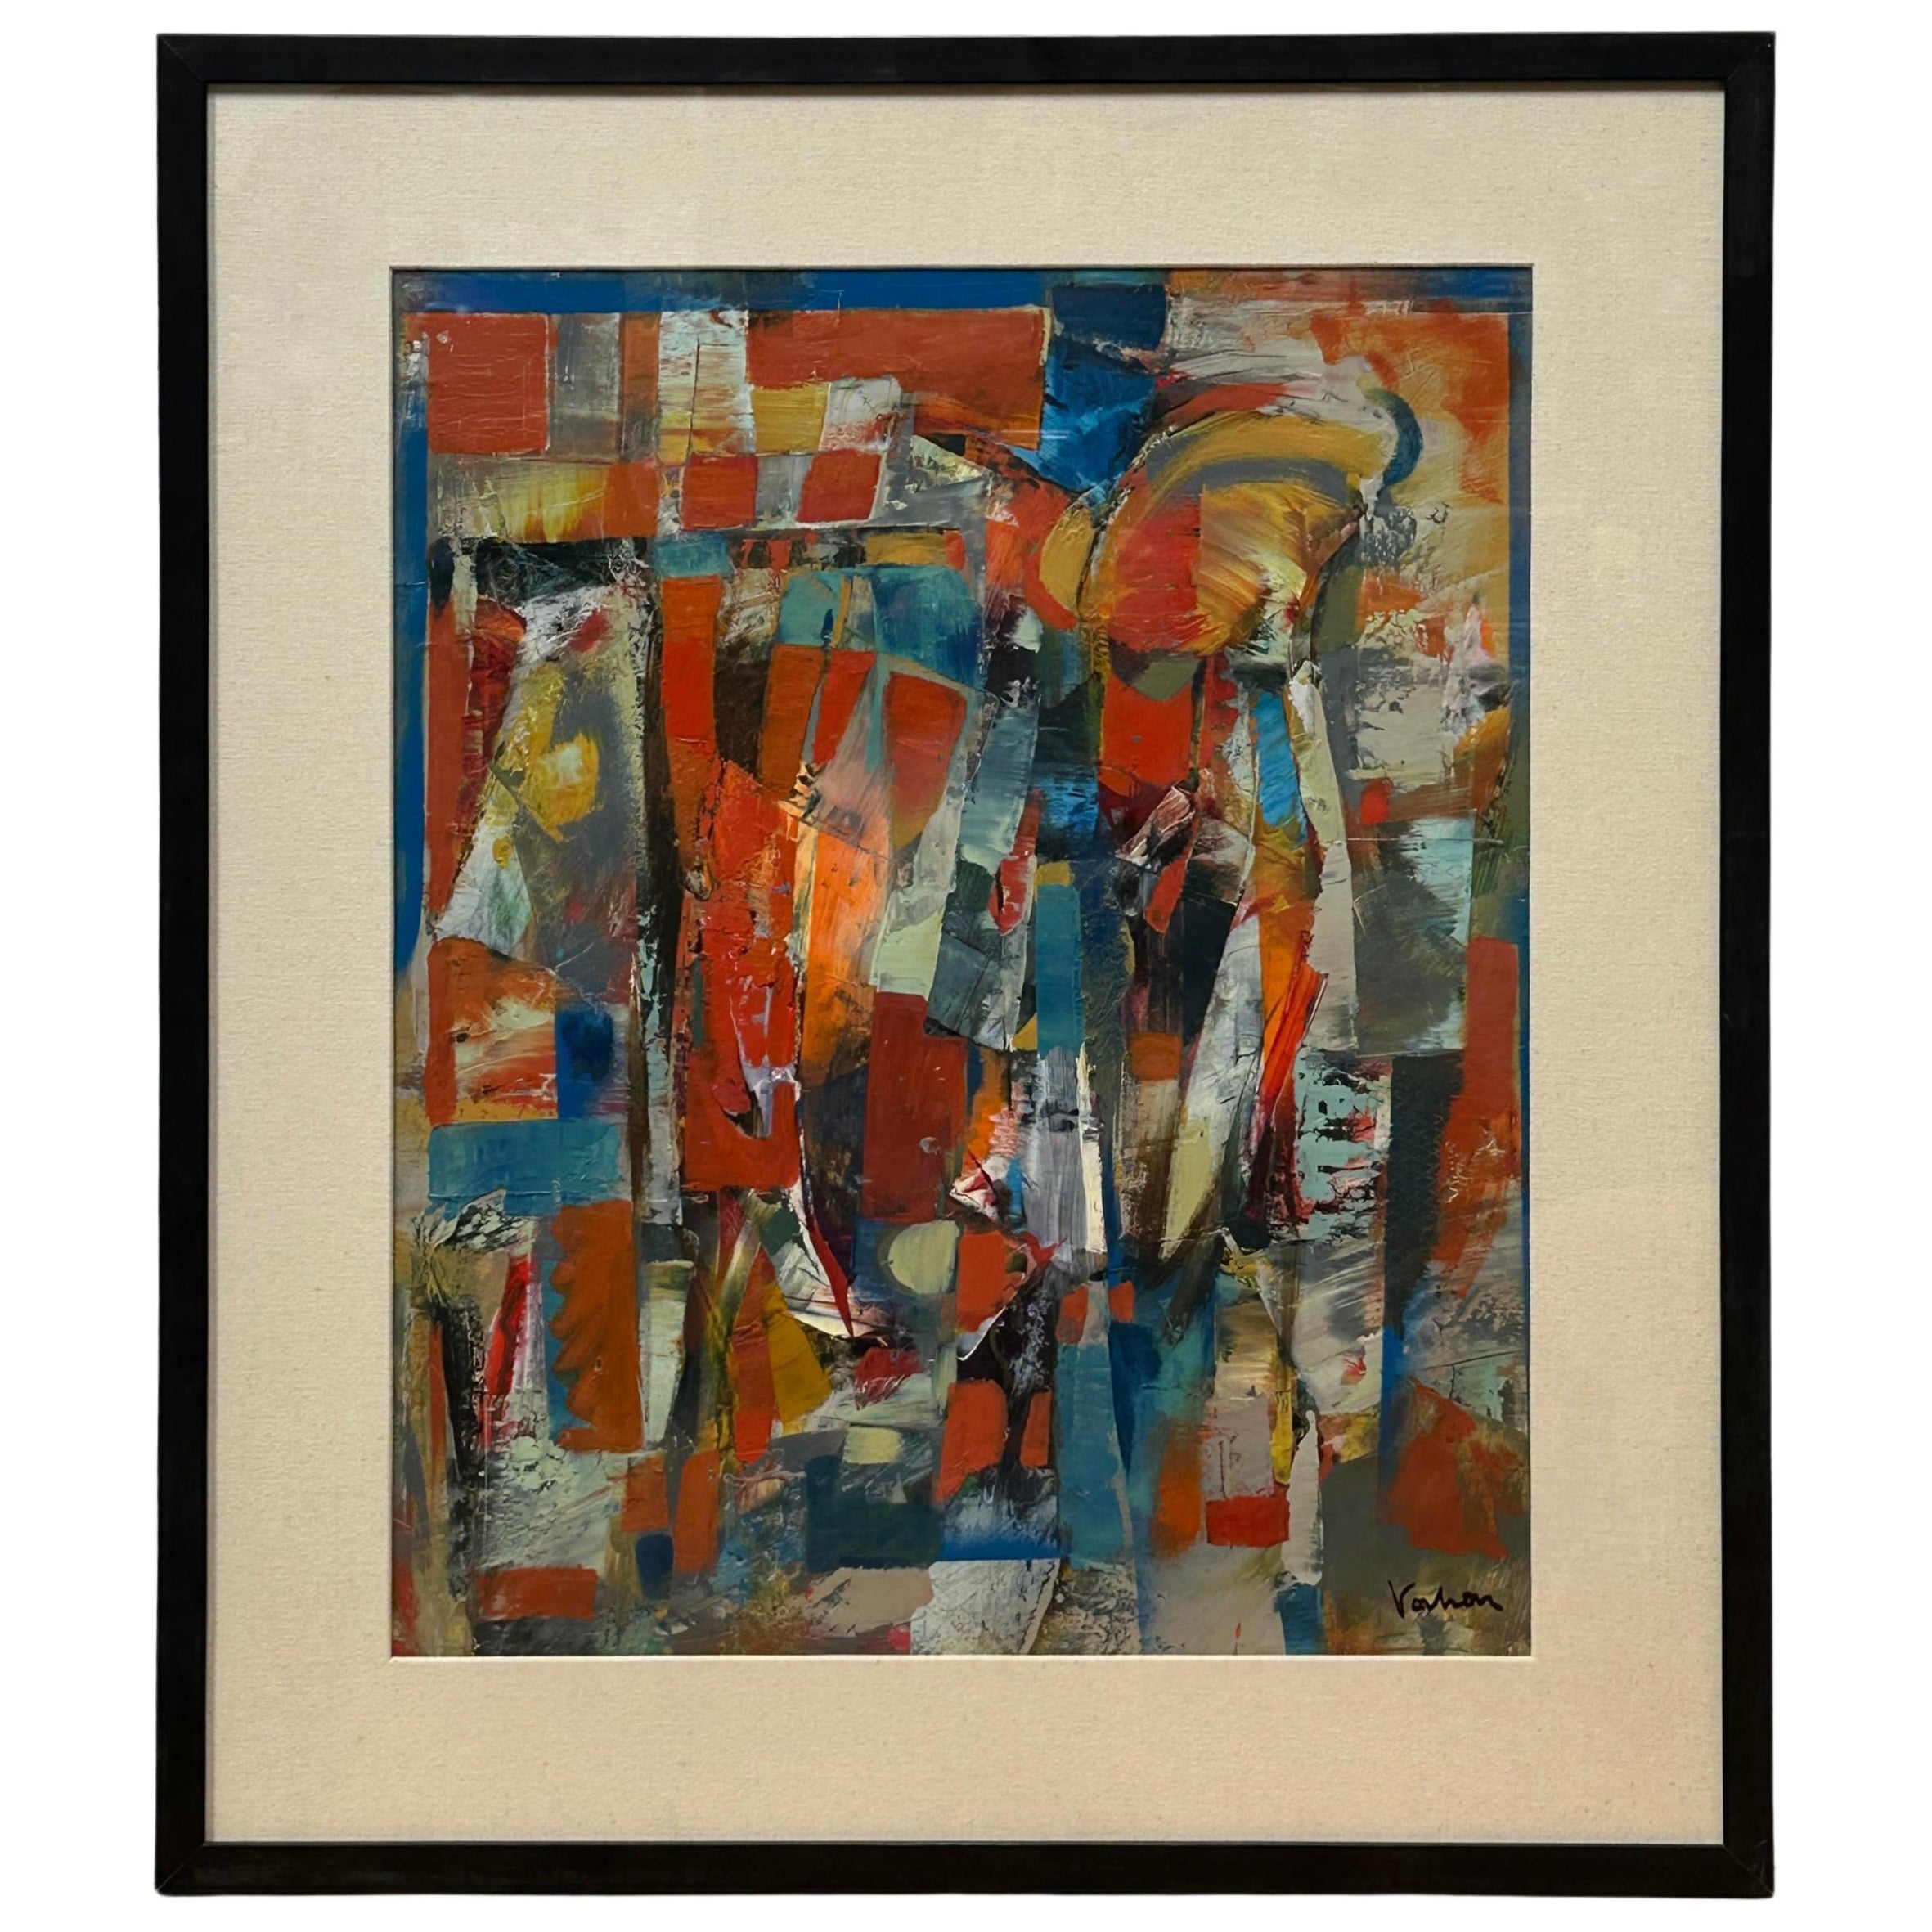 Peinture abstraite colorée rouge, bleue et jaune de Vahan Yervadyan